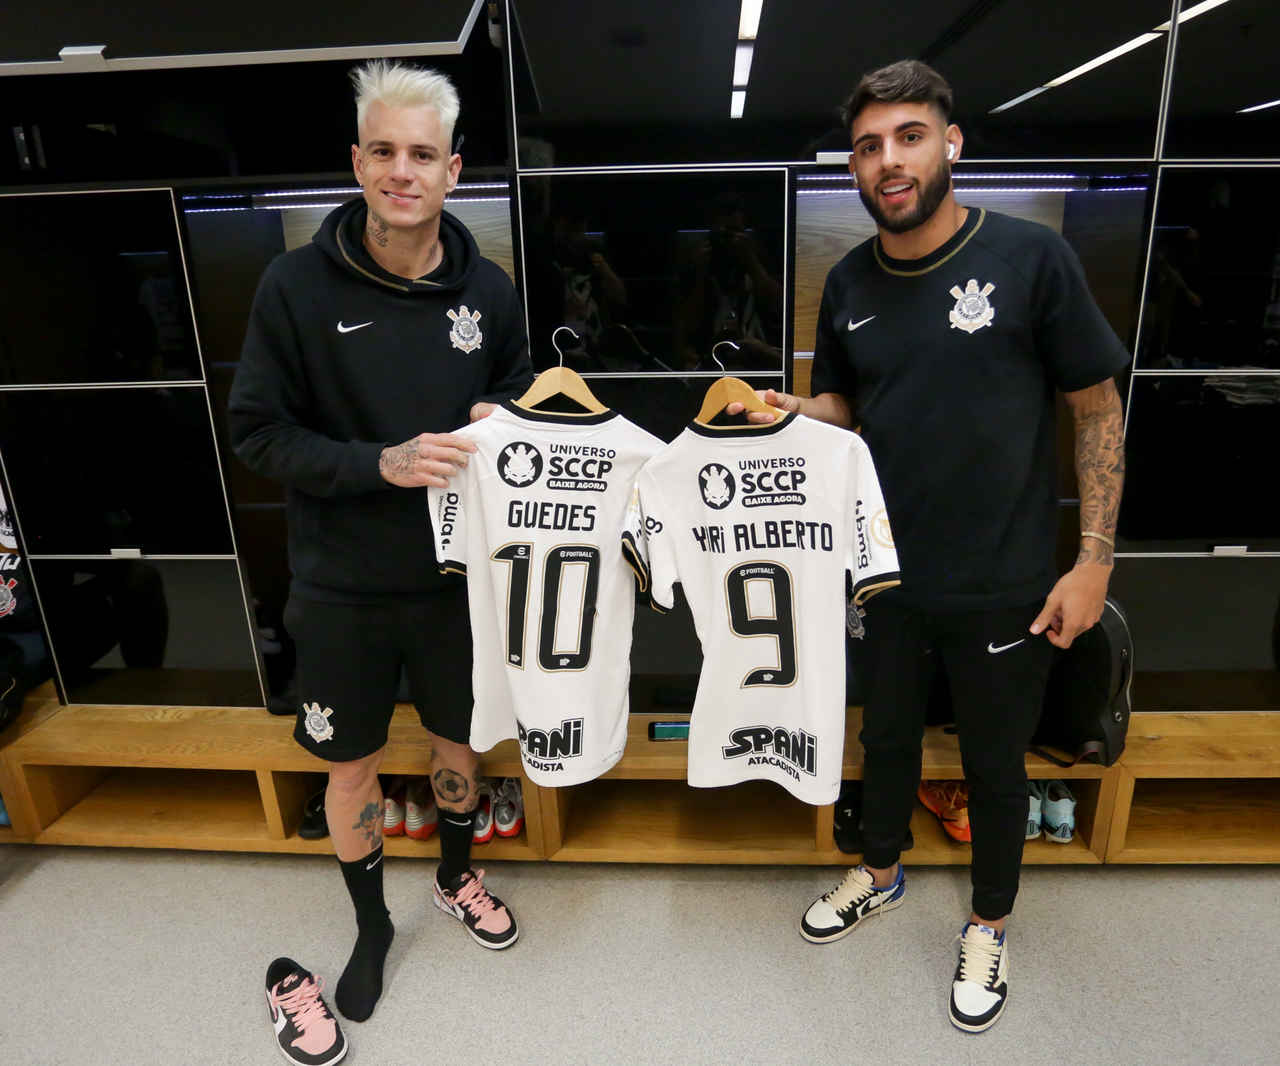 Os melhores jogadores que vi com a camisa do Corinthians. Por